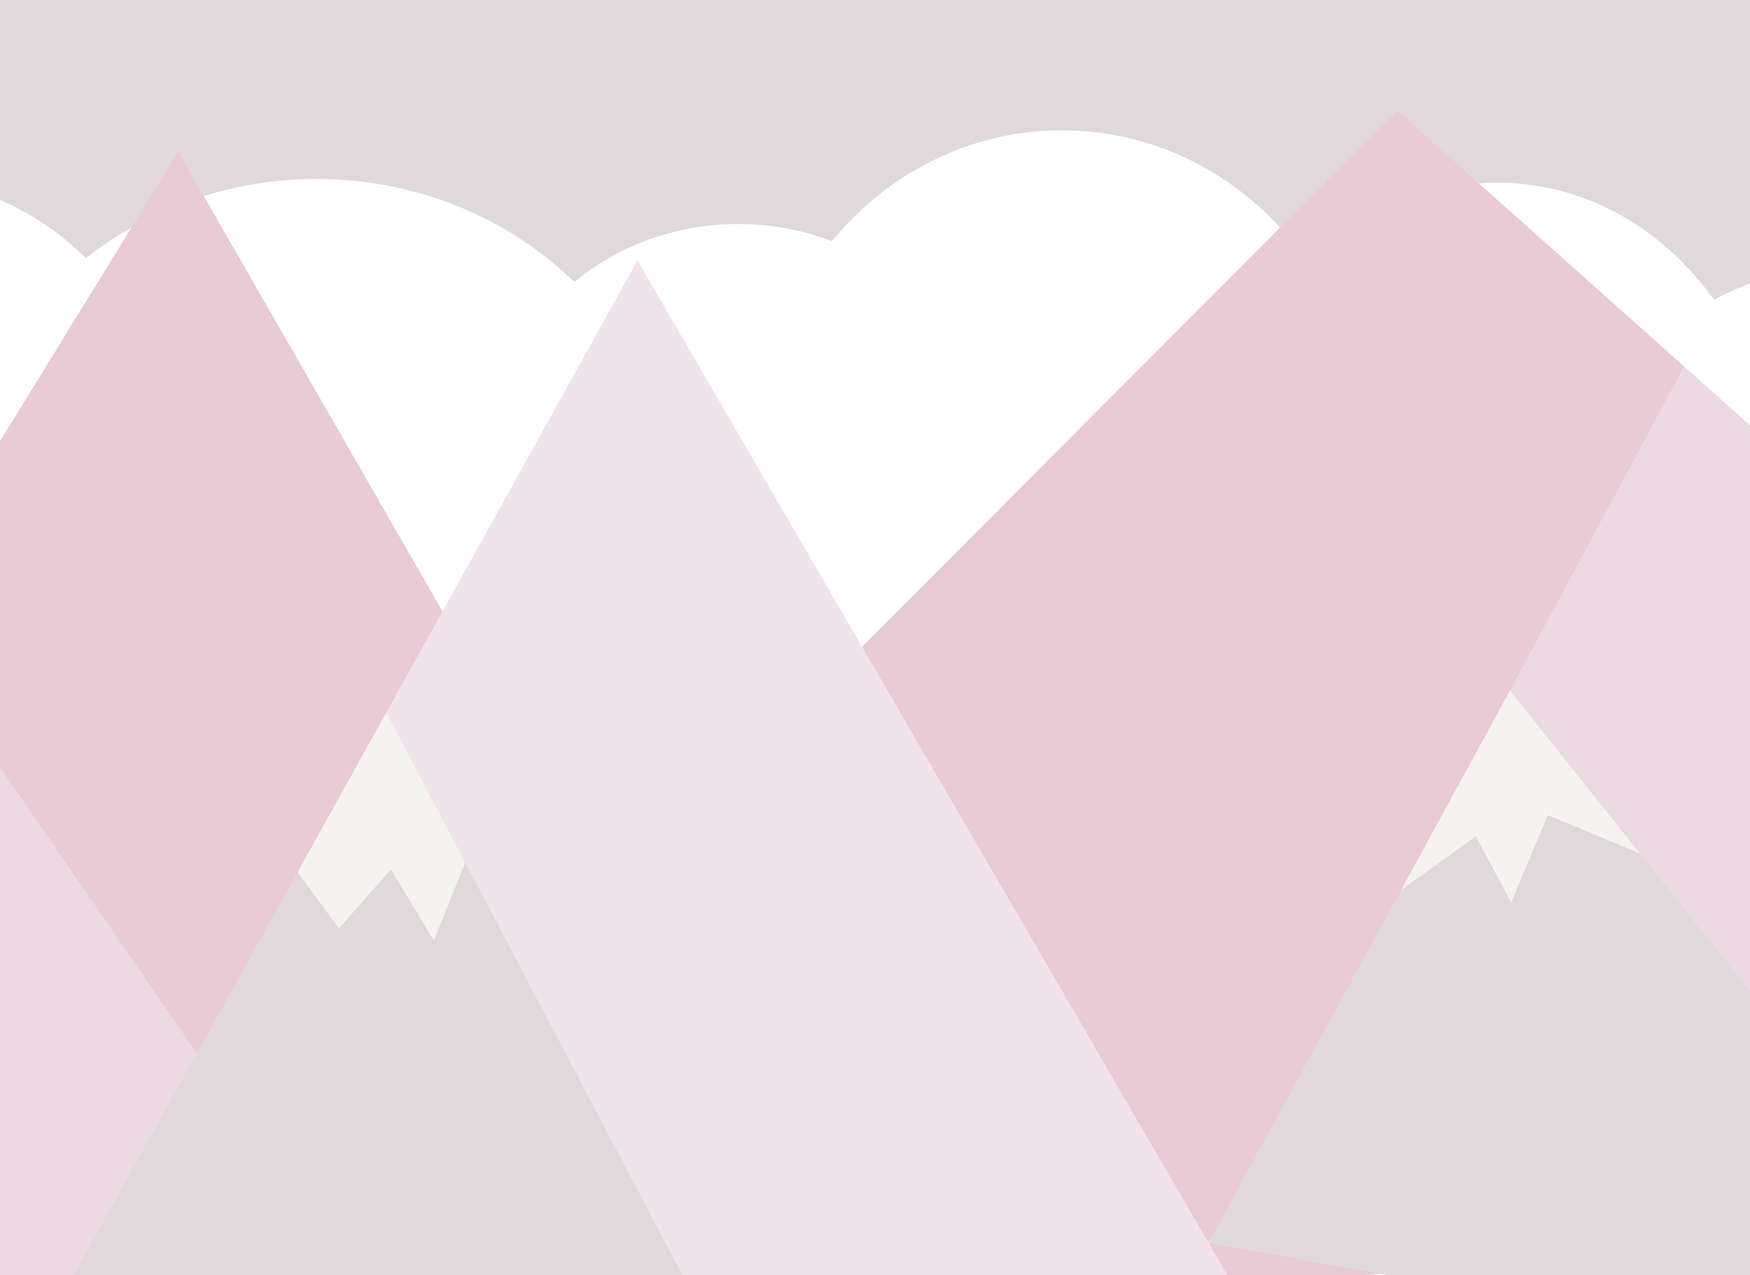             Papel Pintado Habitación Infantil Montañas con Nubes - Rosa, Blanco, Gris
        